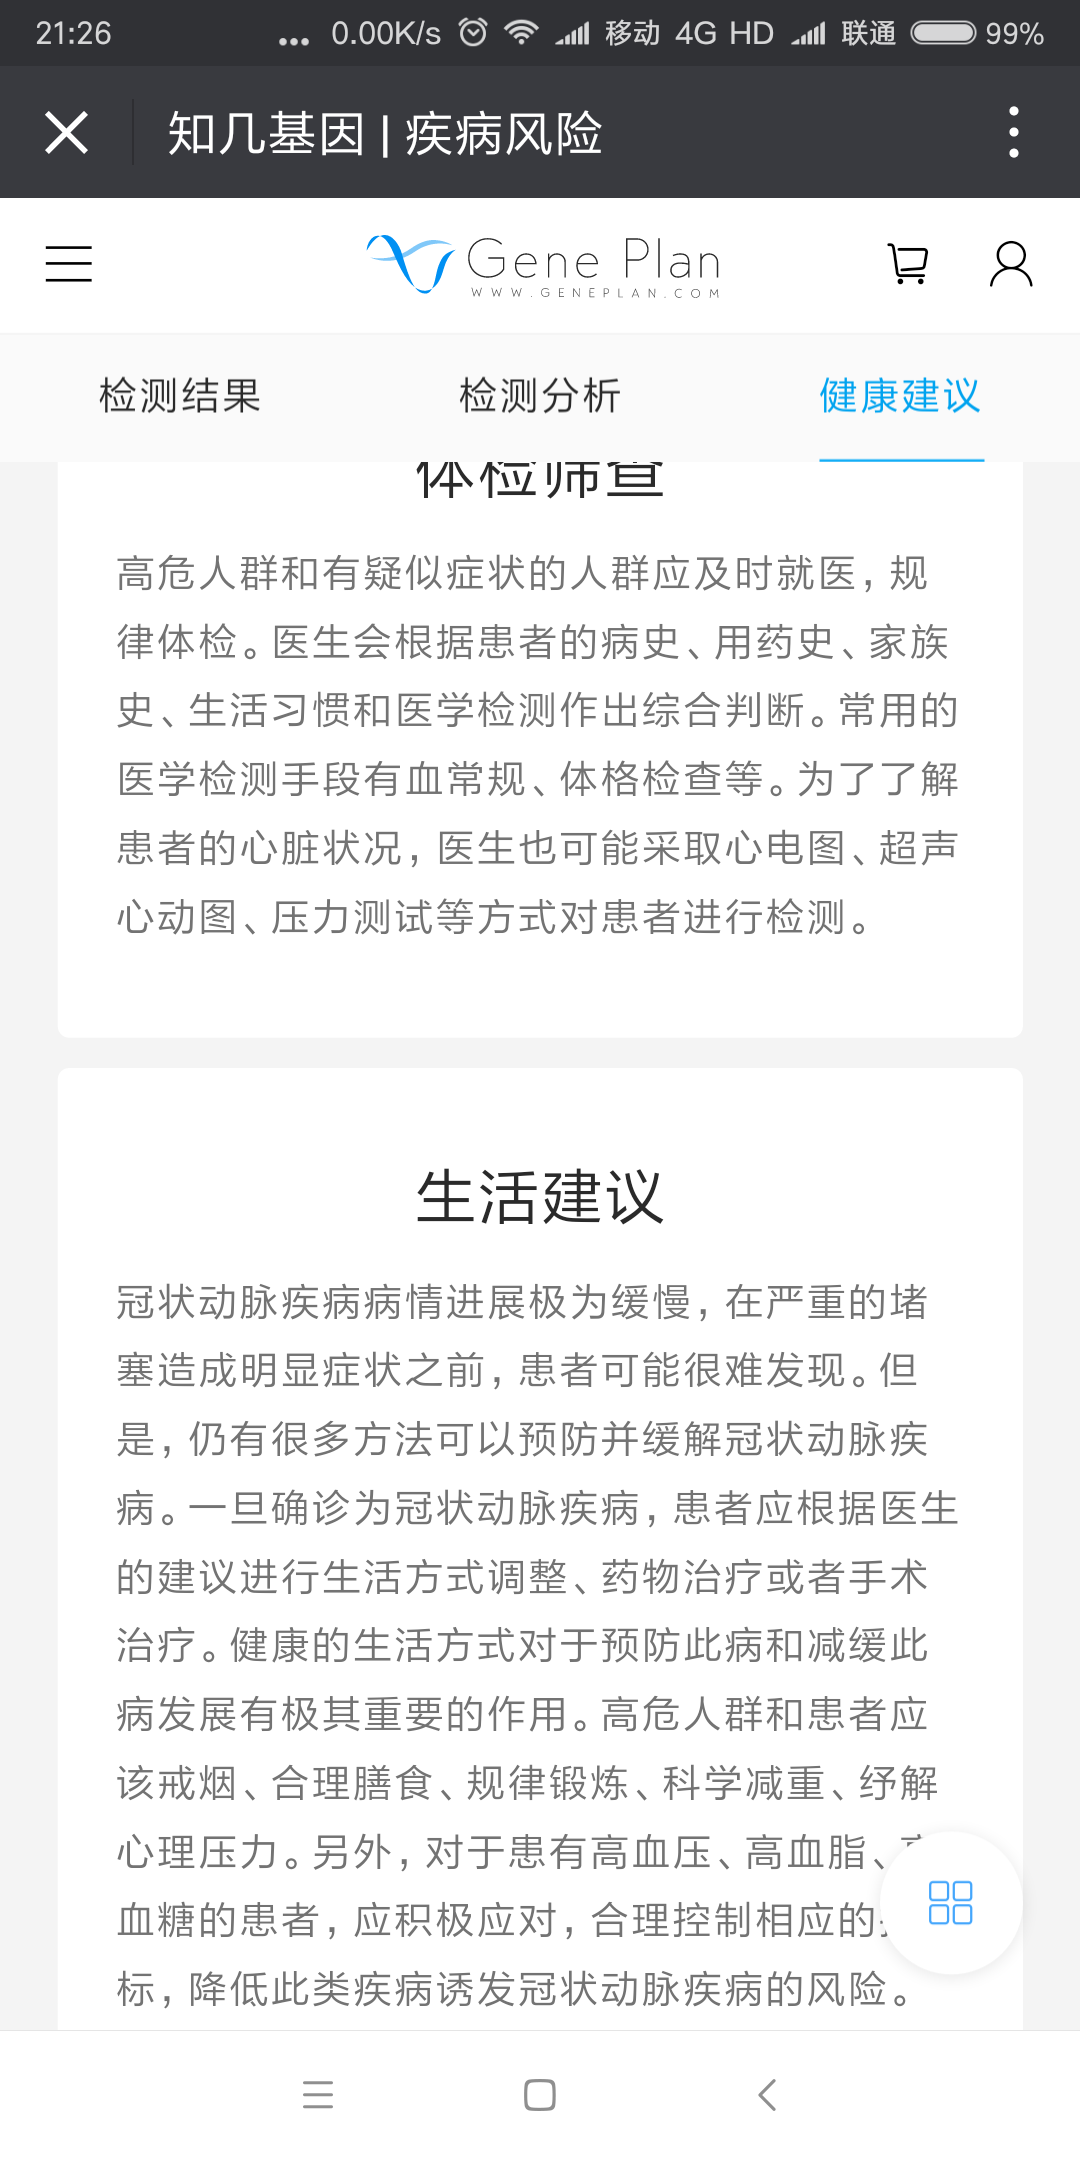 Screenshot_2017-12-03-21-26-15-047_com.tencent.mm.png